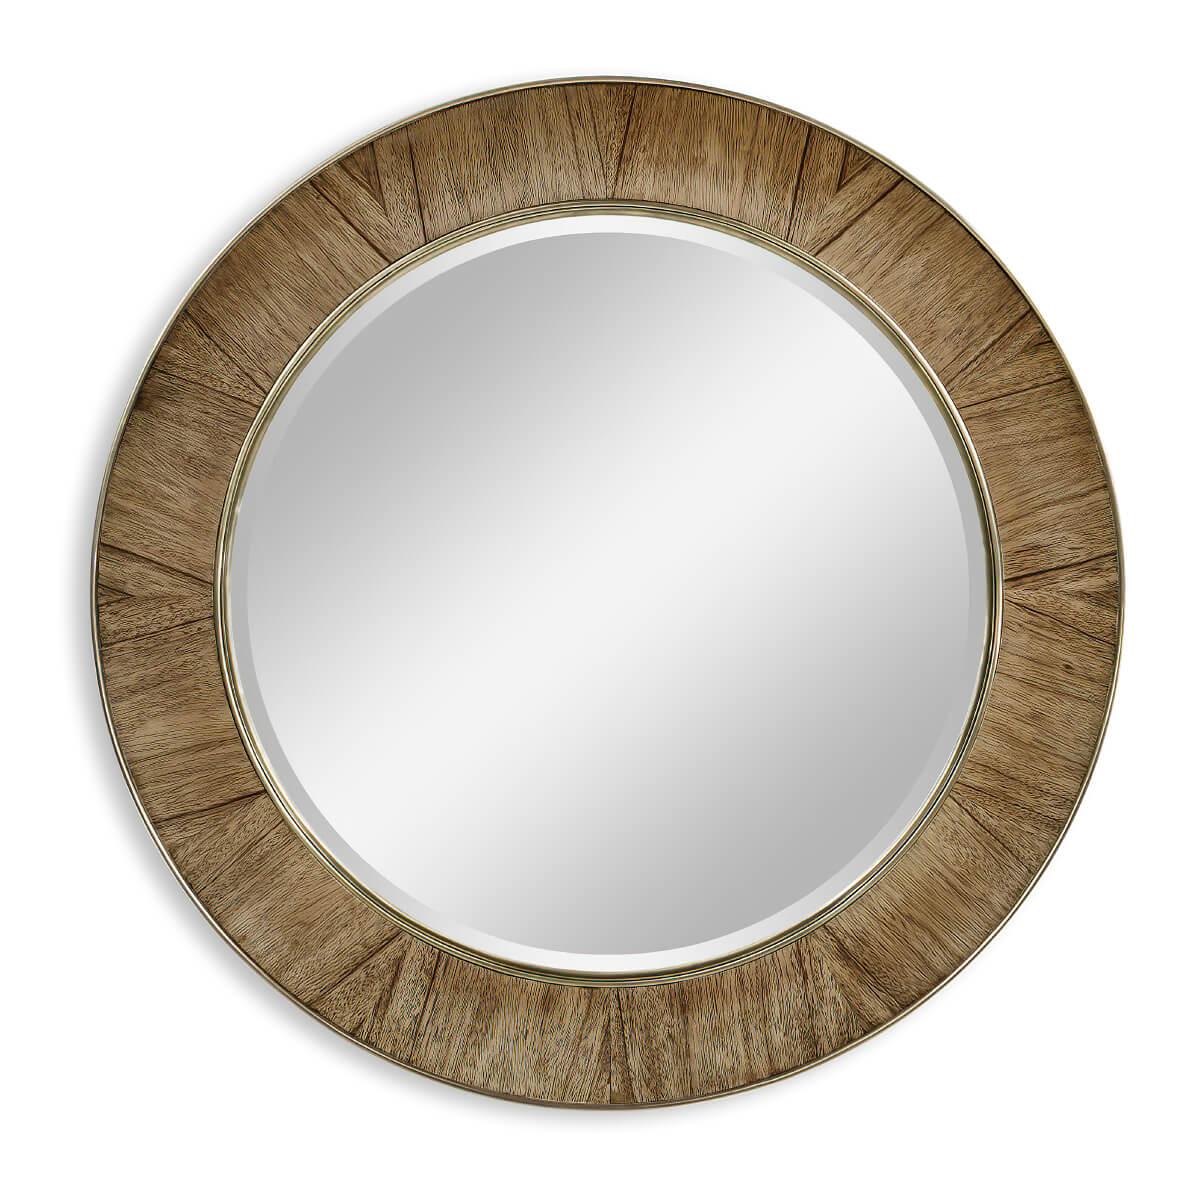 Ce miroir rond de 48 pouces de forme concave en placage d'ambre doré a une garniture en laiton et une plaque de miroir biseautée.

Dimensions : 48